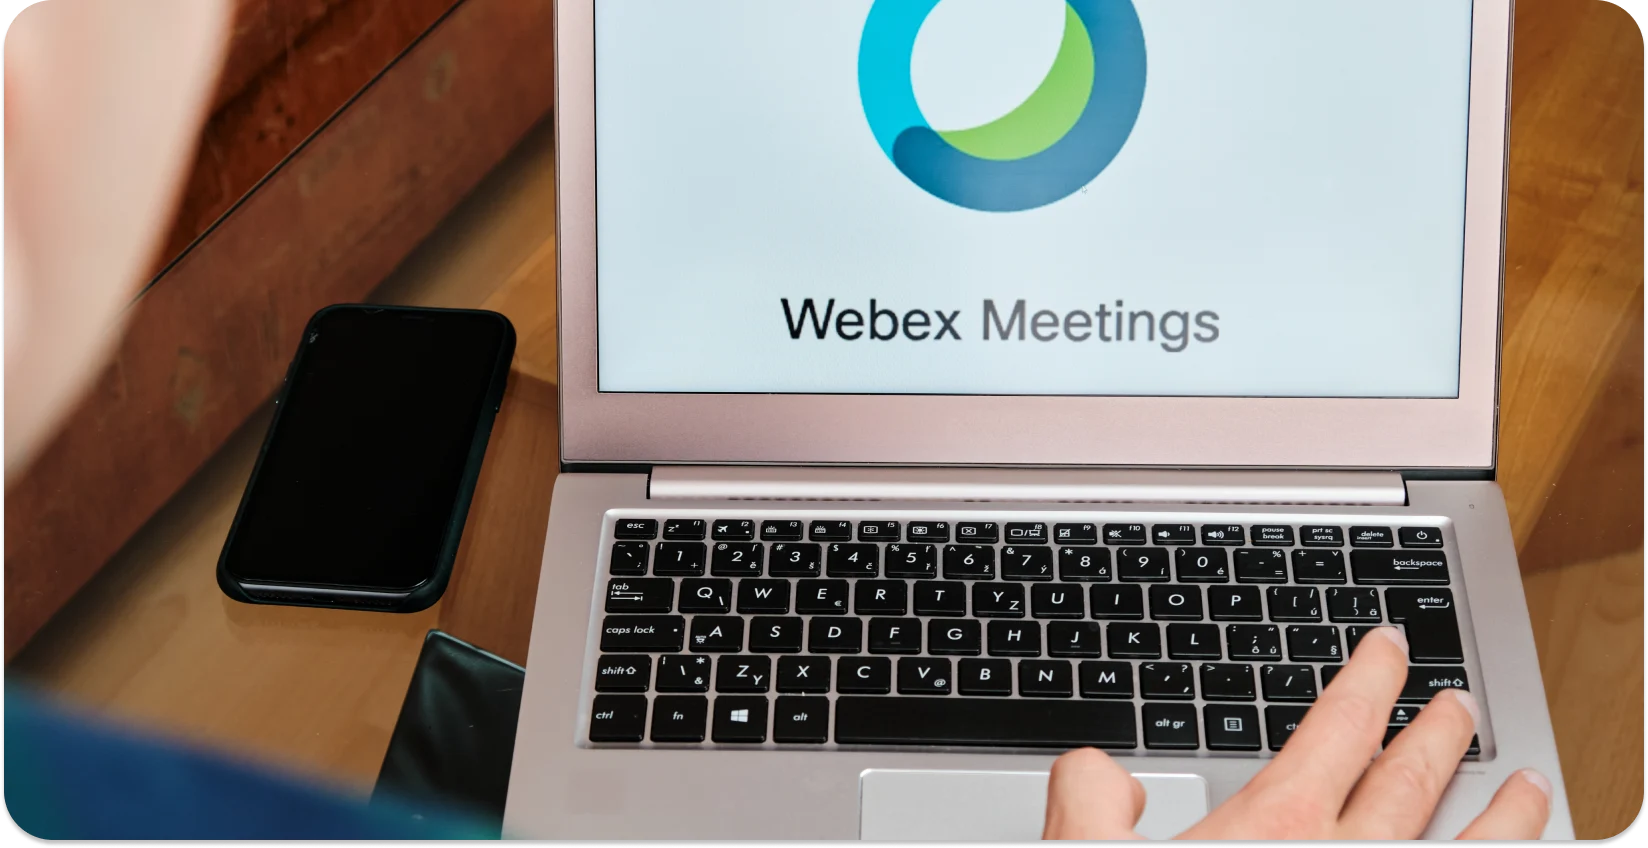 Een persoon die een Webex vergadering start op een laptop, klaar voor automatische transcriptie.